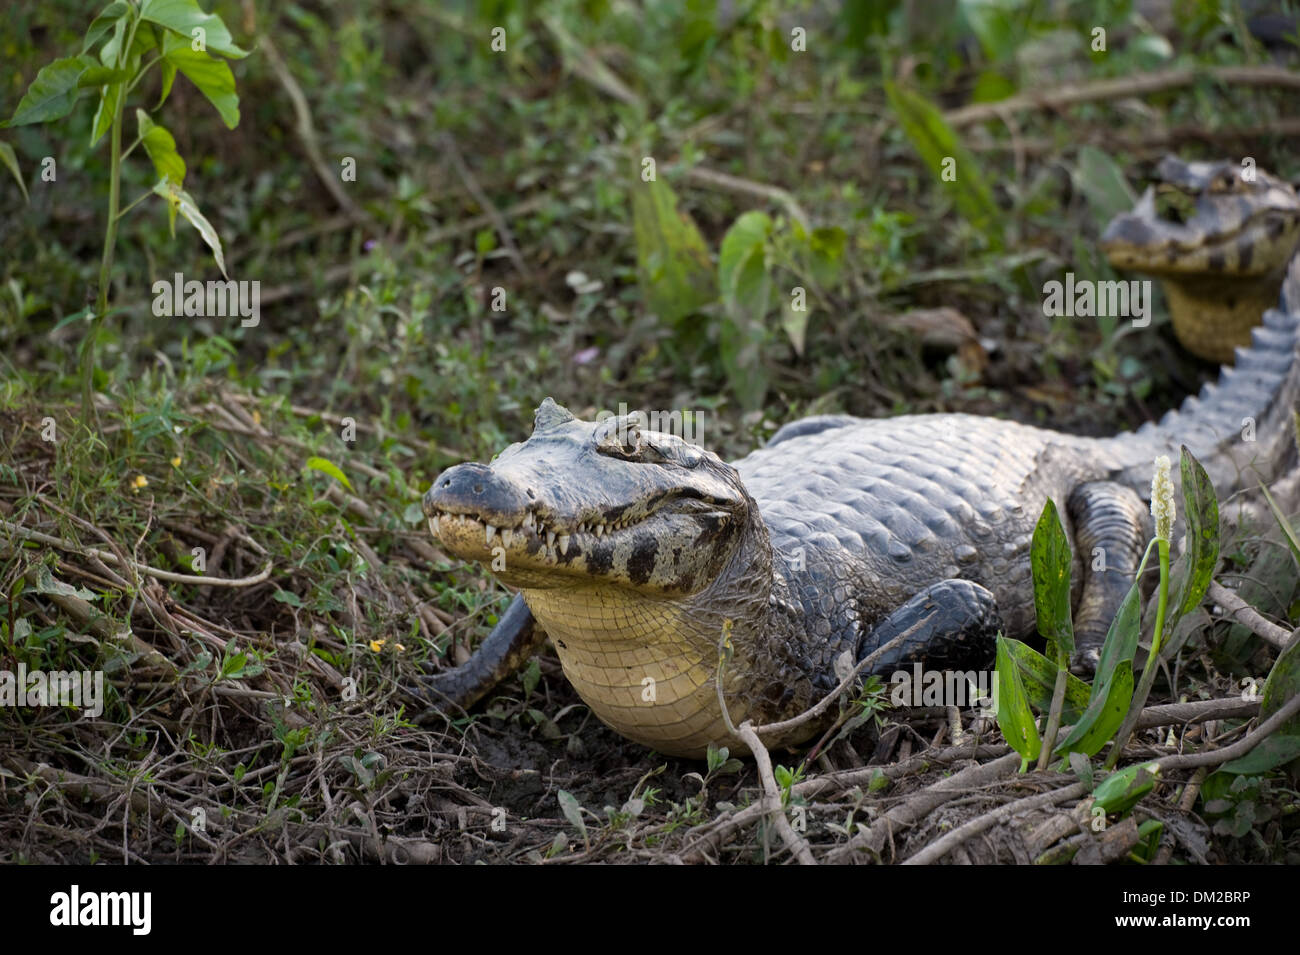 Un Caiman yacare mostrando su vientre amarillo en el Pantanal brasileño Foto de stock